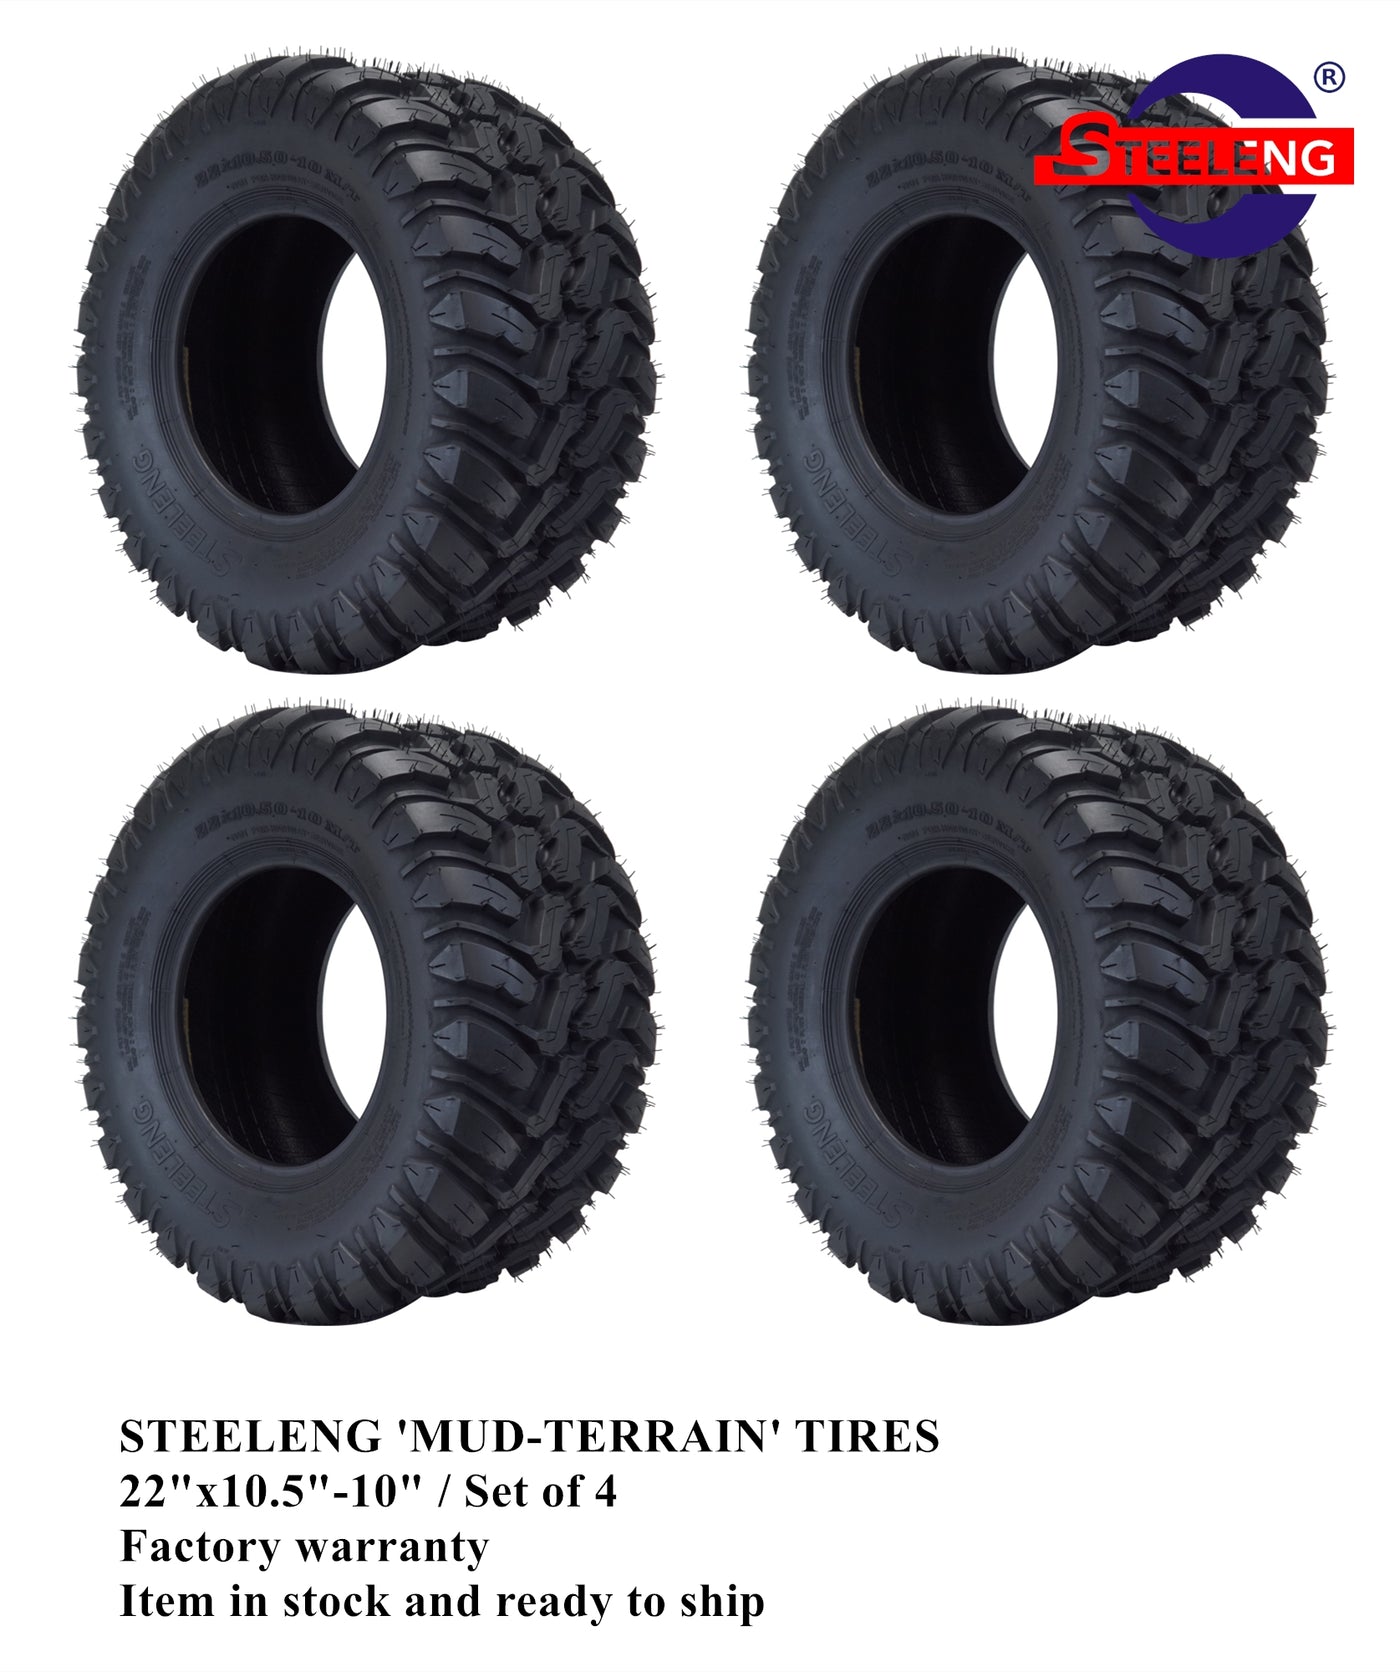 STEELENG 22″x10.5″-10″ DOT Mud-Terrain / All-Terrain Tires (Set of 4)